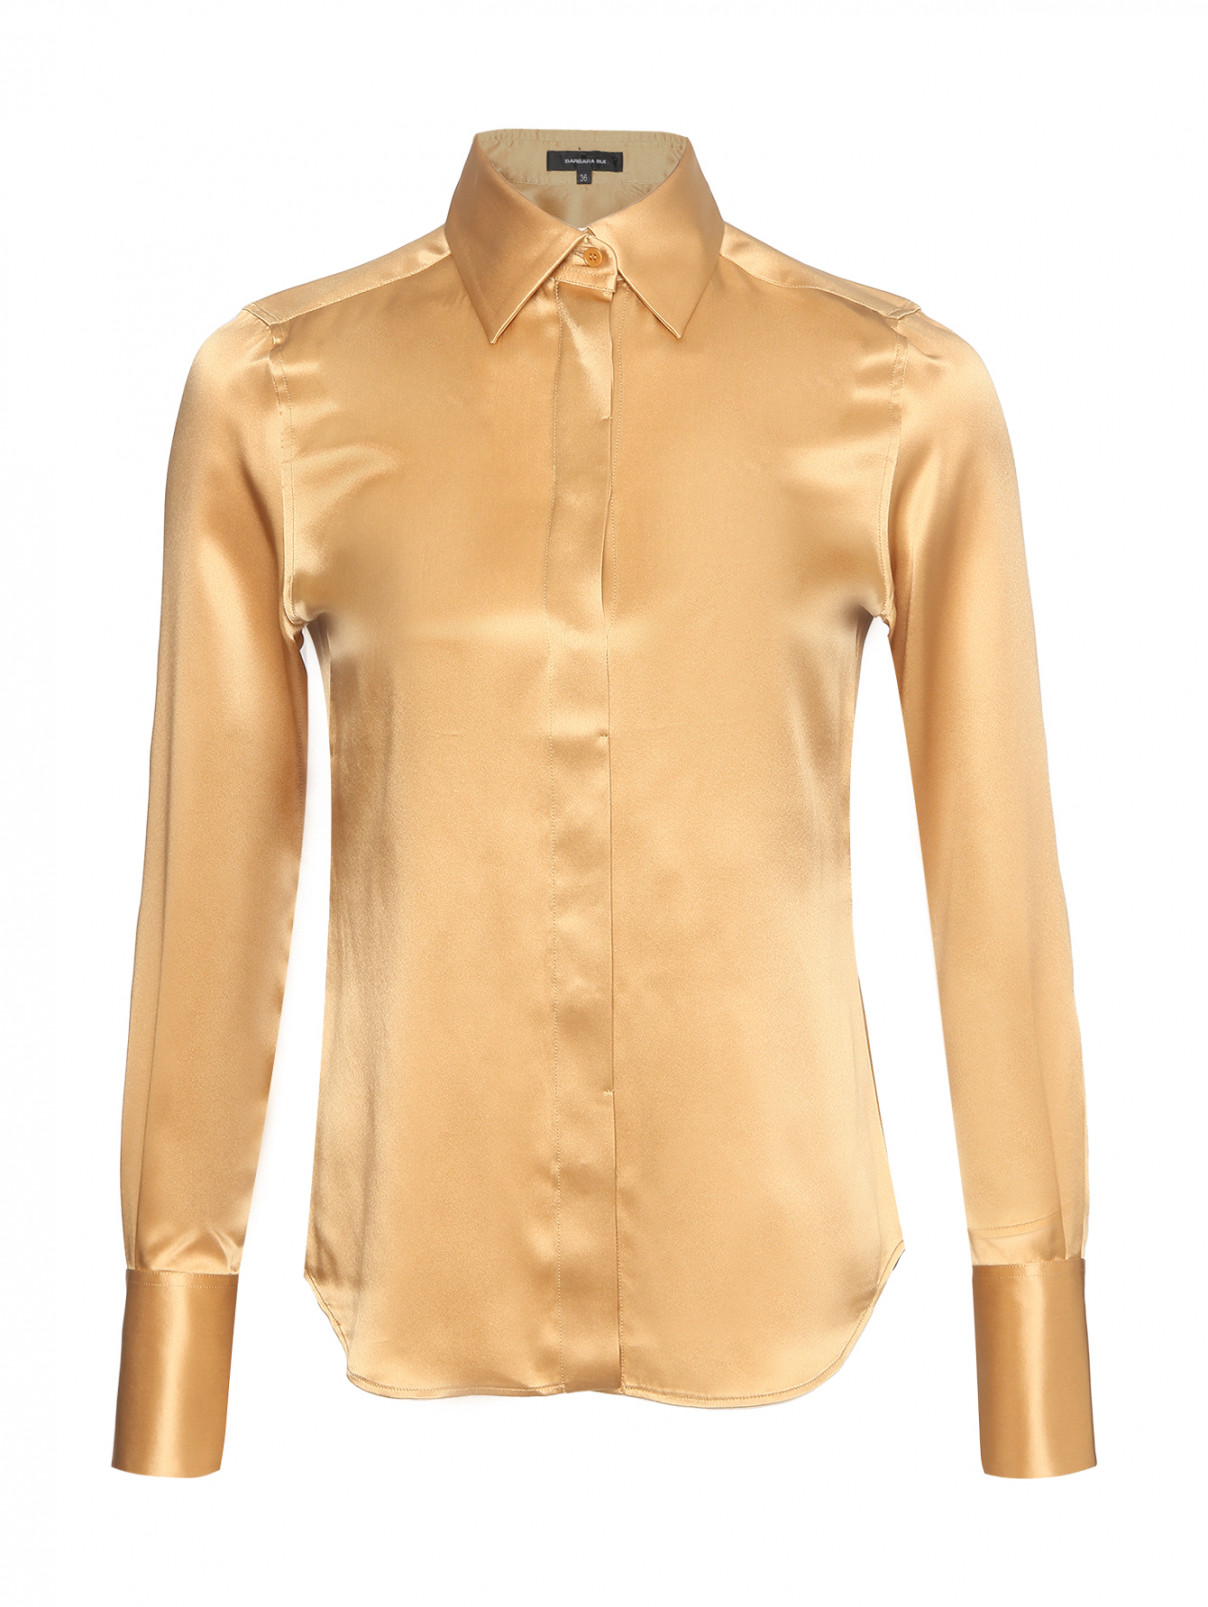 Блуза из шелка на пуговицах Barbara Bui  –  Общий вид  – Цвет:  Бежевый